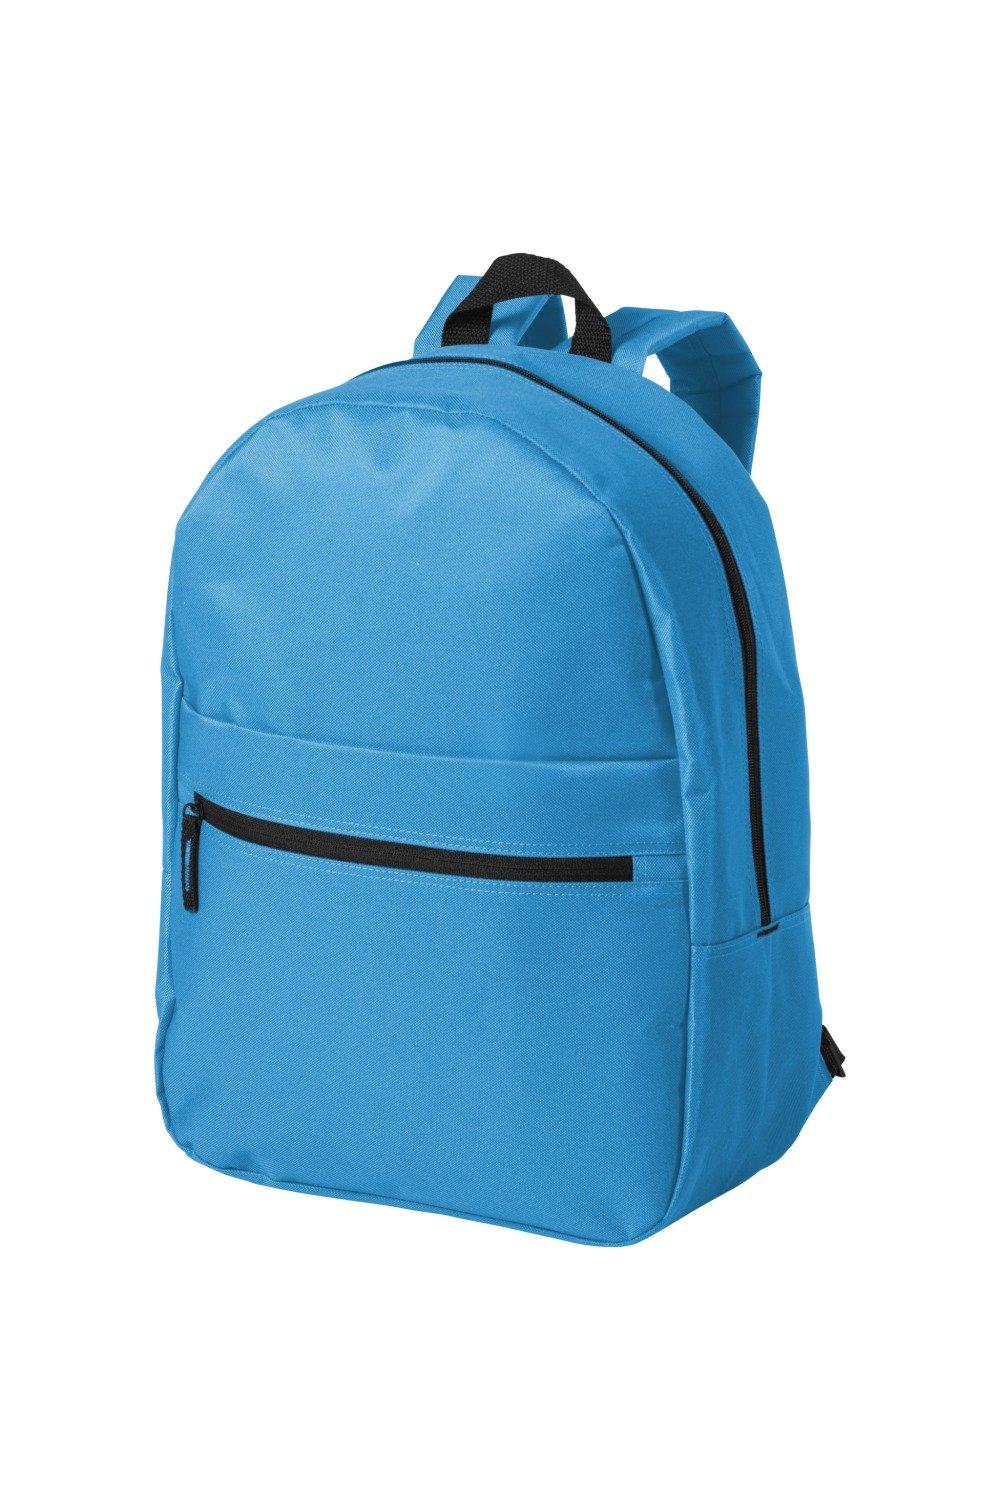 Ванкуверский рюкзак Bullet, синий рюкзак с карманом единорог 1 шт